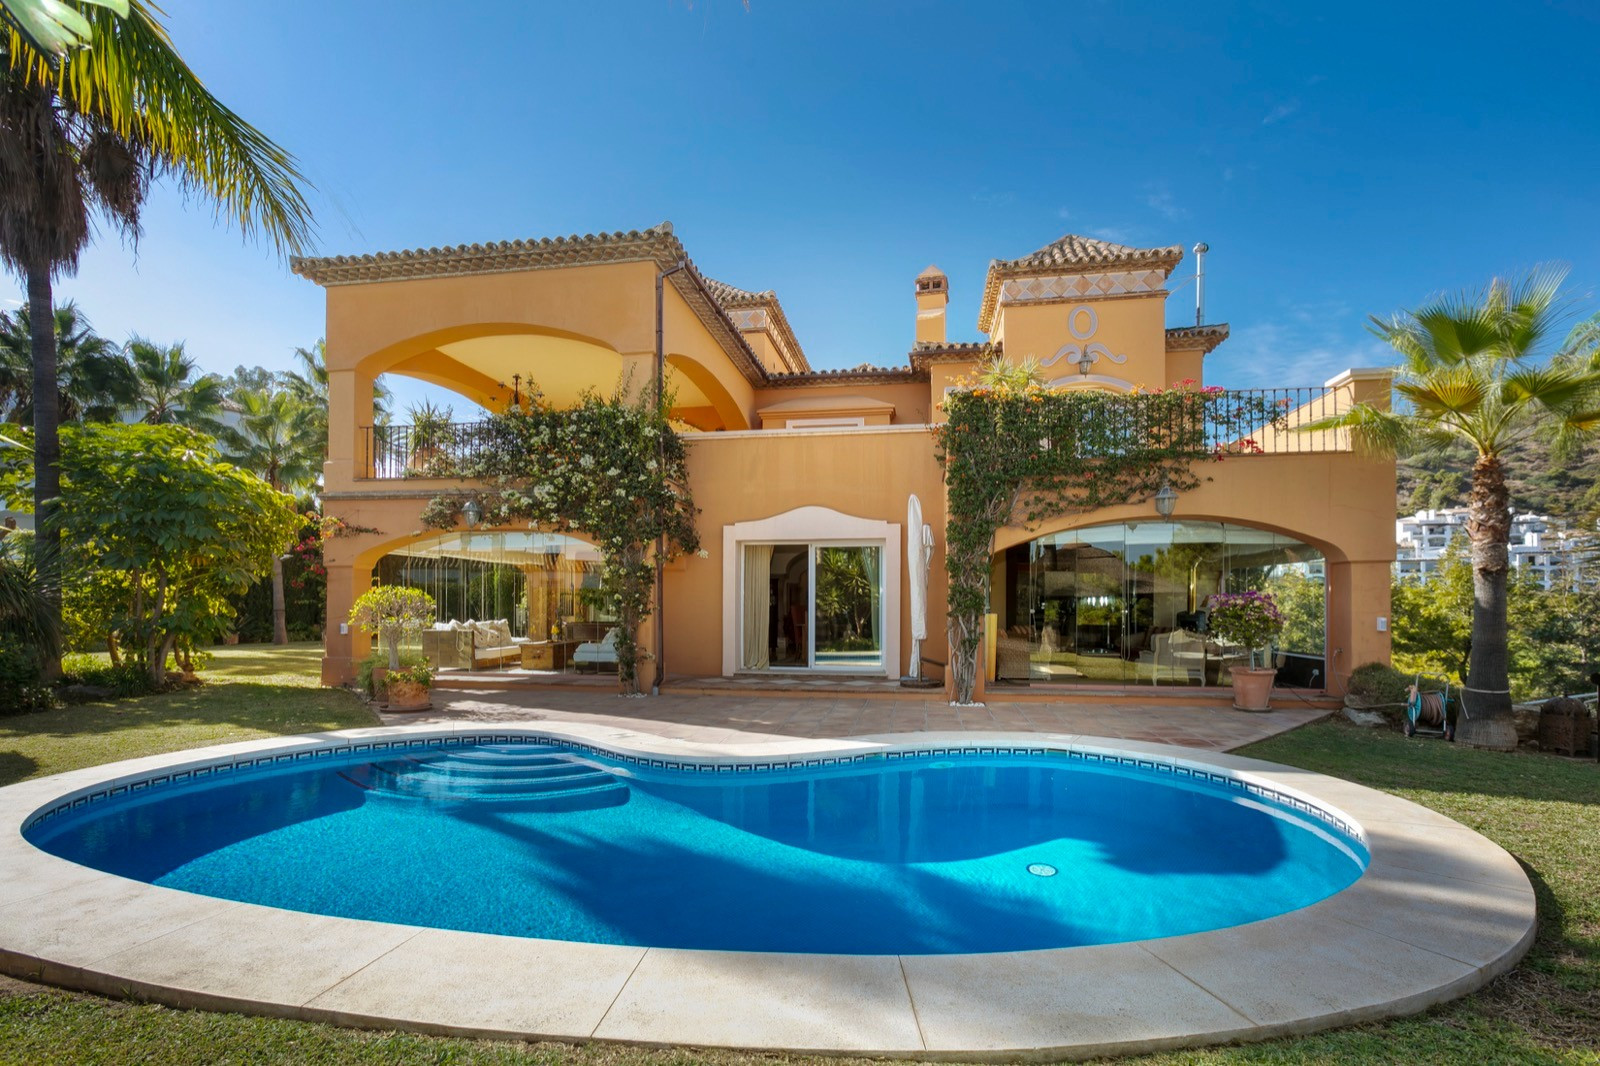 Auténtica villa de estilo mediterráneo situada en la exclusiva y tranquila zona de La Quinta